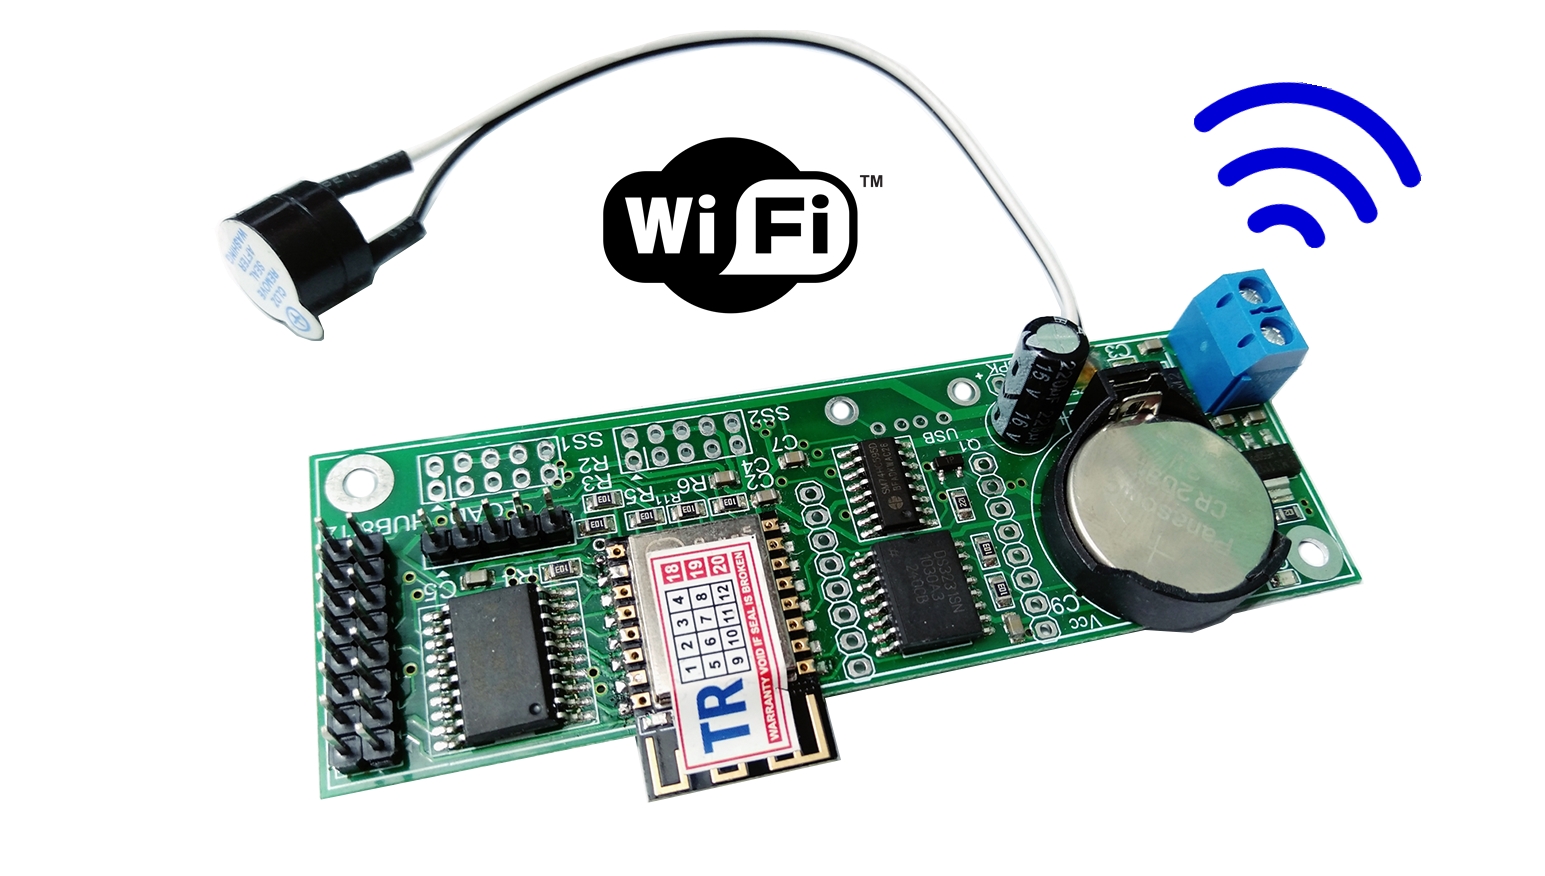 Dick b. Галилео Baseblock Wi Fi Hub. Контроллер вентиляторов своими руками через Arduino. MZ-b75-s. Контроллер Gate-Hub-WIFI.